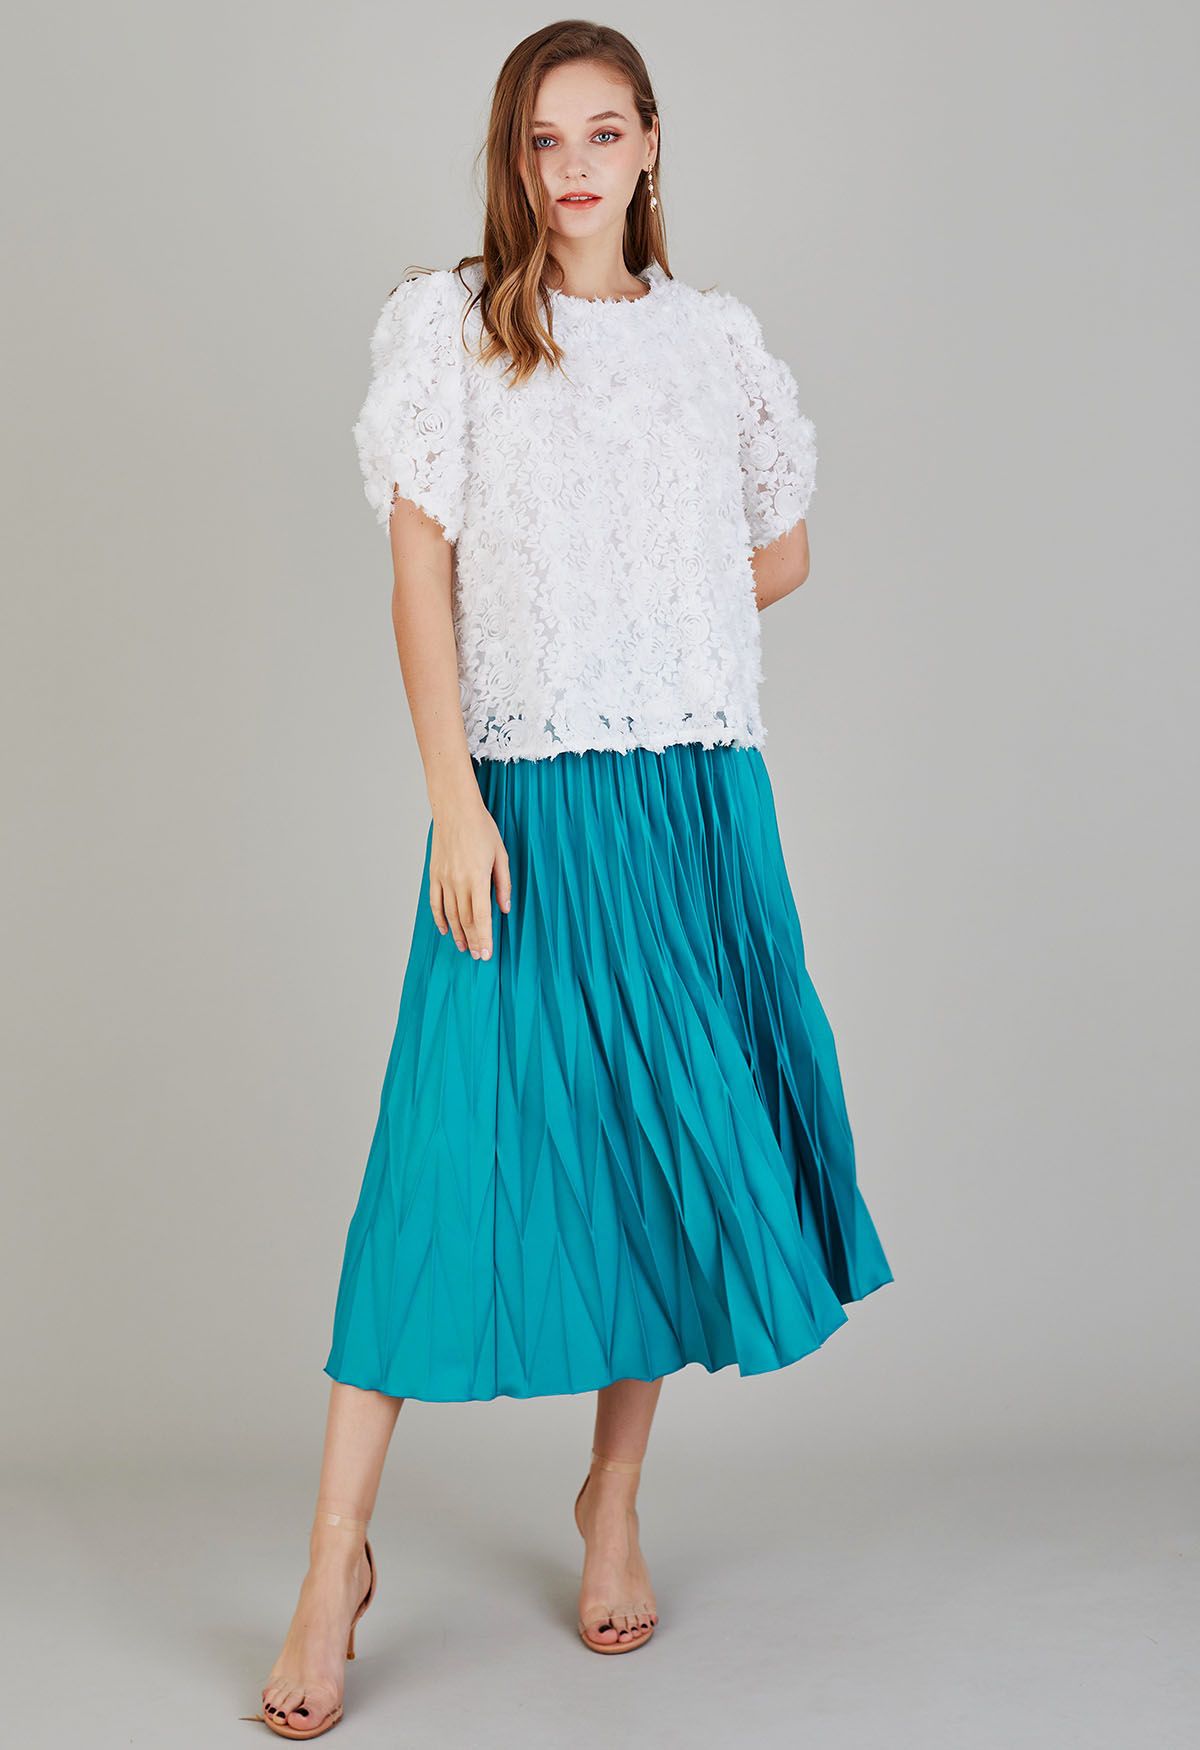 Irregular Pleated Midi Skirt in Teal